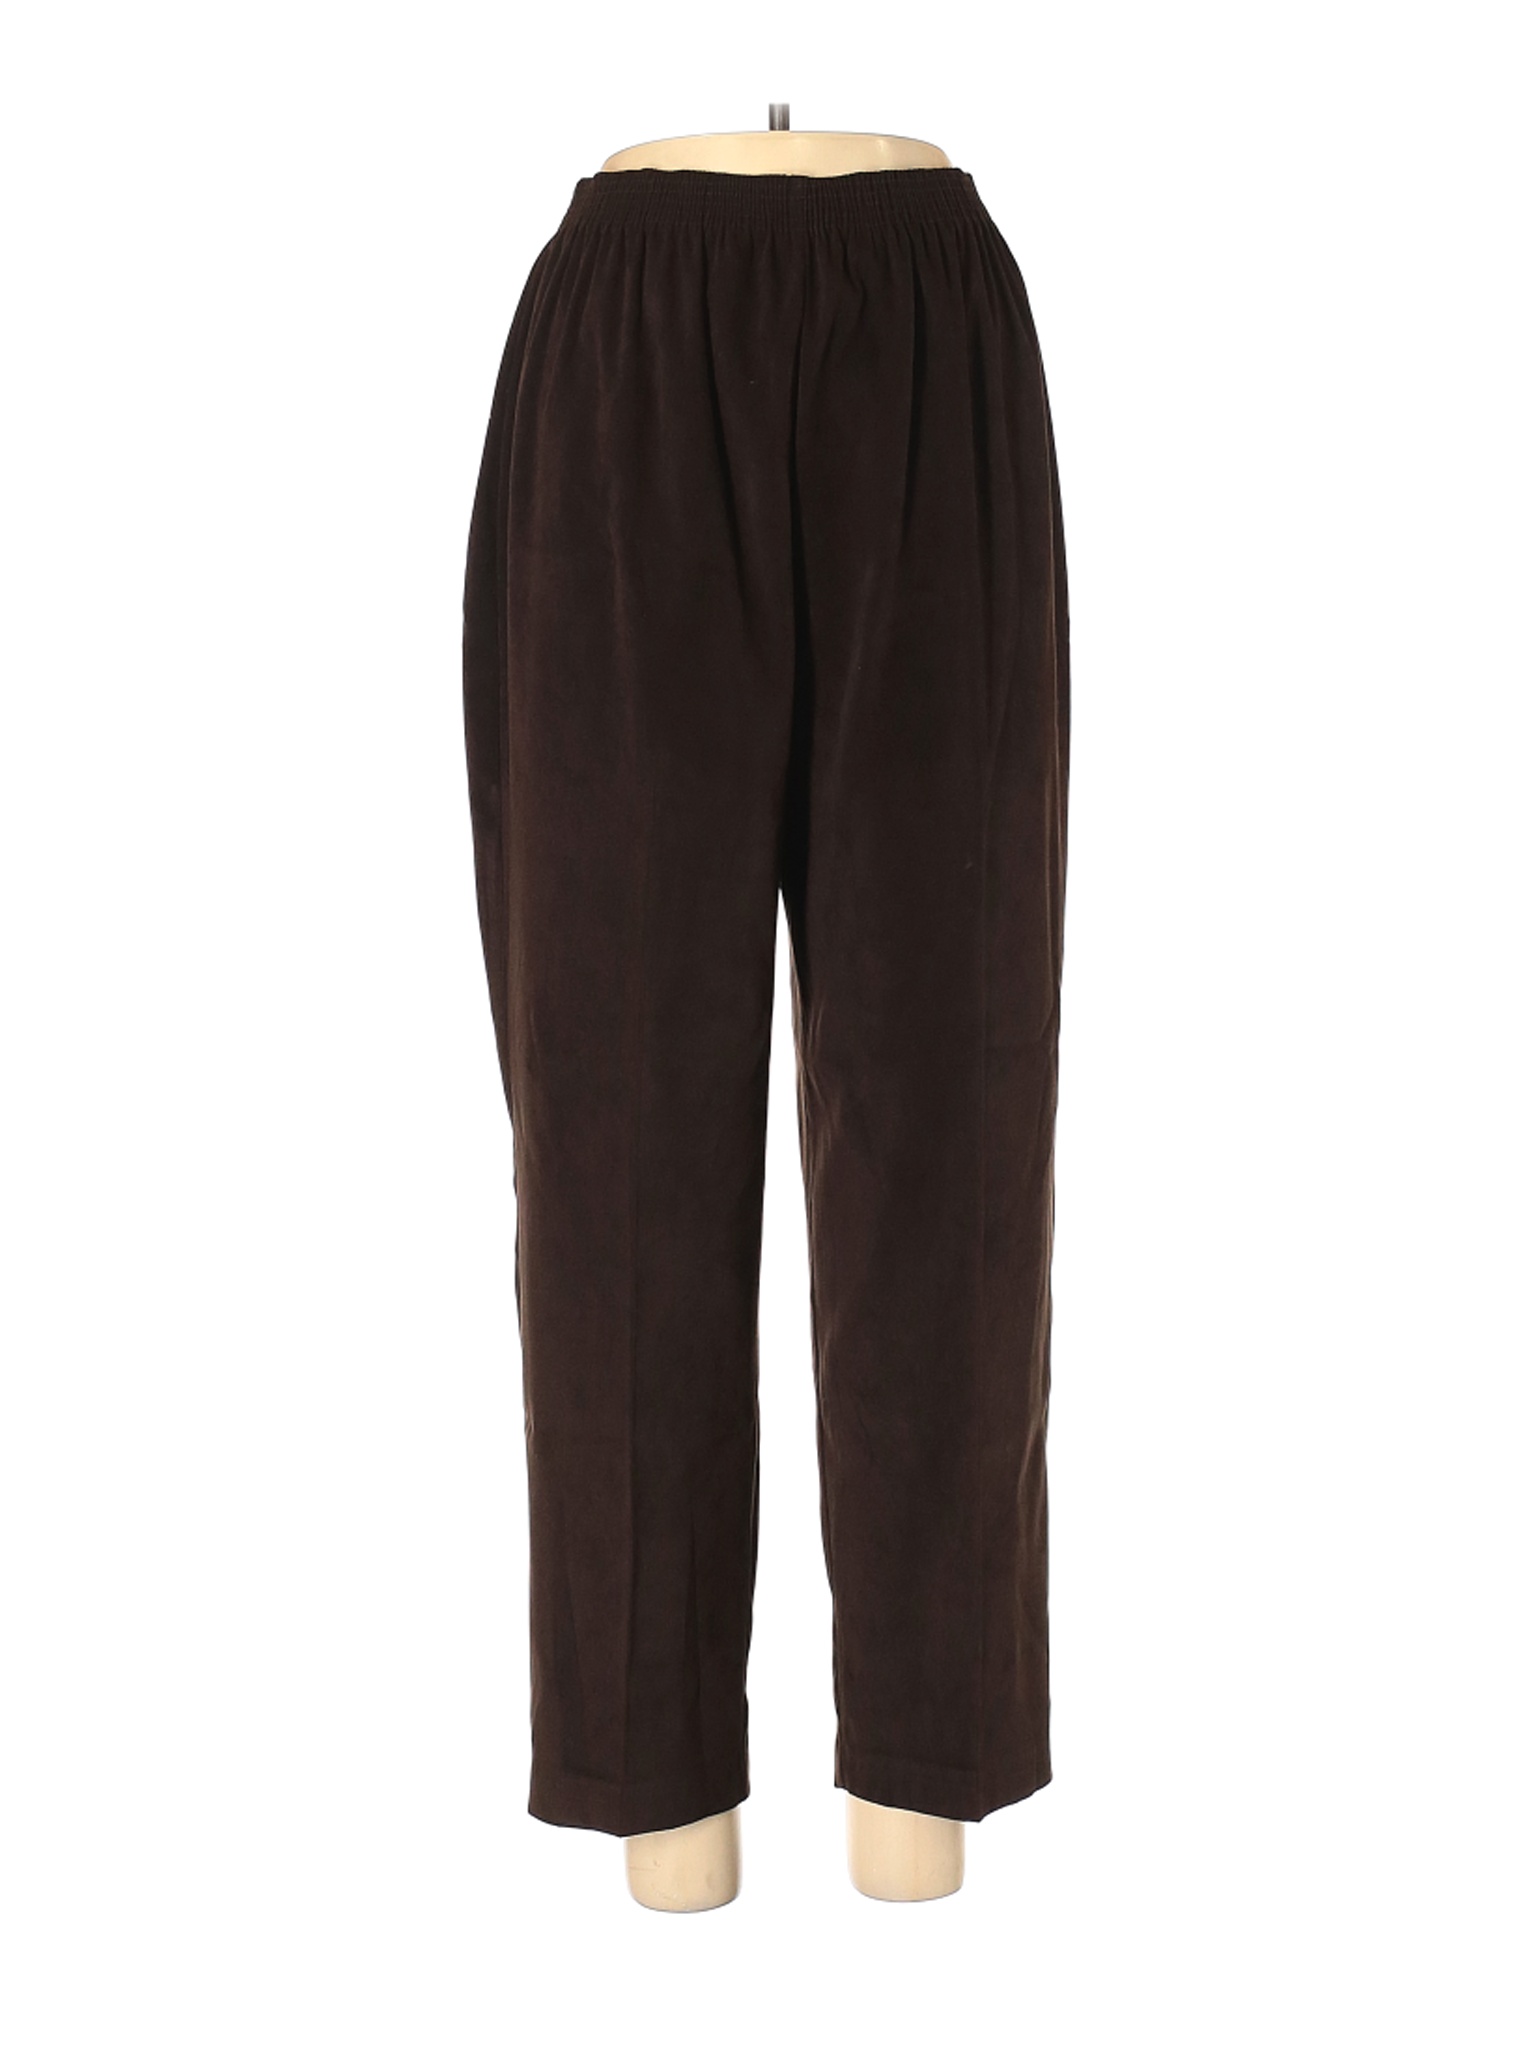 Briggs Women Brown Casual Pants M Petites | eBay